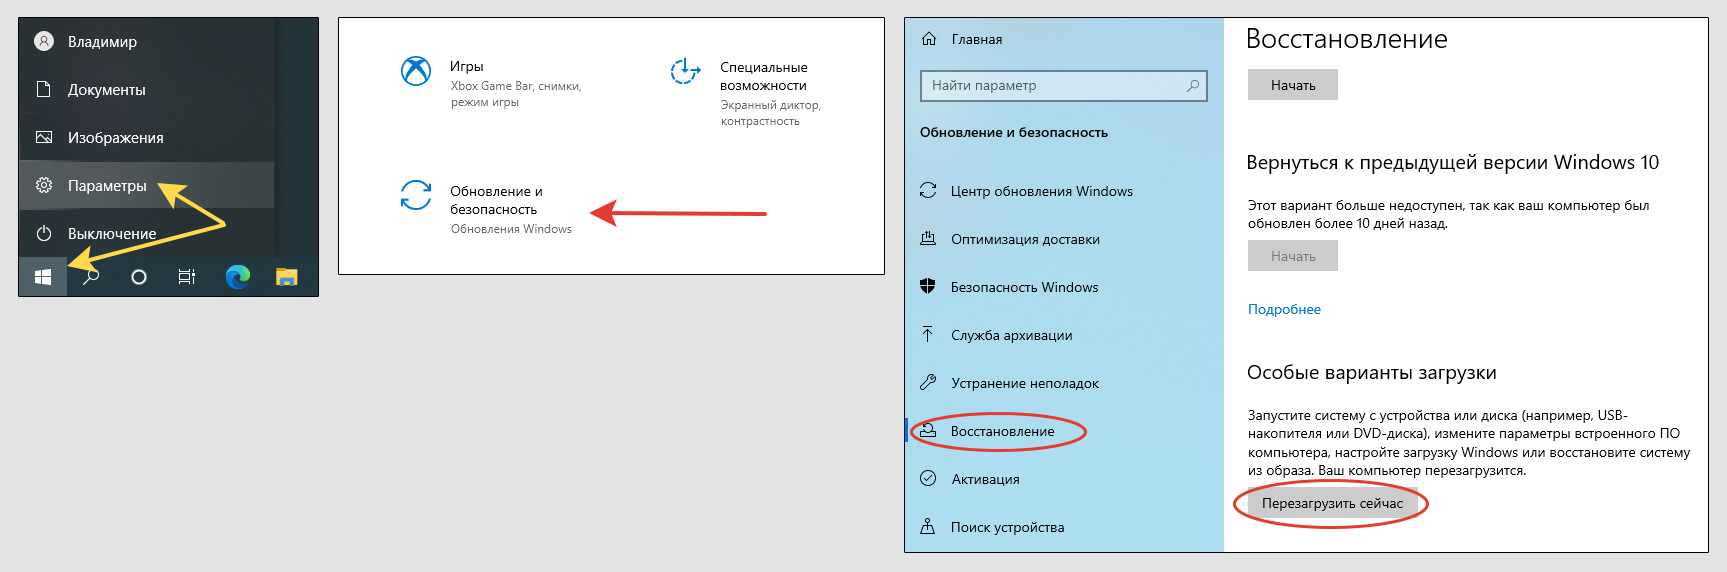 Переход в раздел обновления и безопаности Windows 10, открыт раздел для восстановление с отмеченной кнопкой перезагрузки.